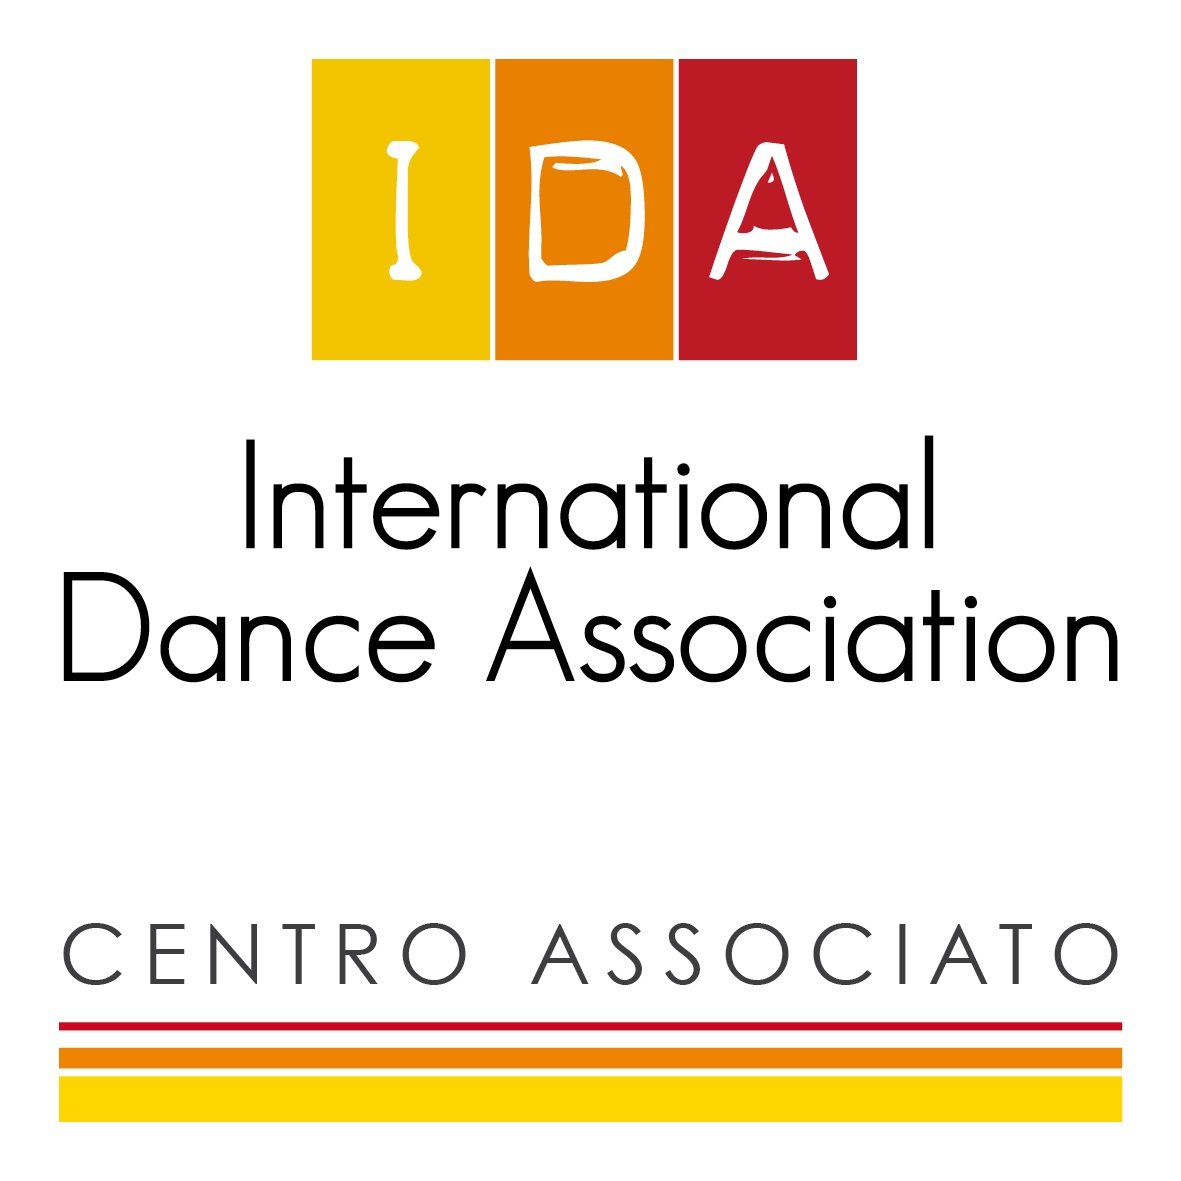 IDA_Centro_Associato